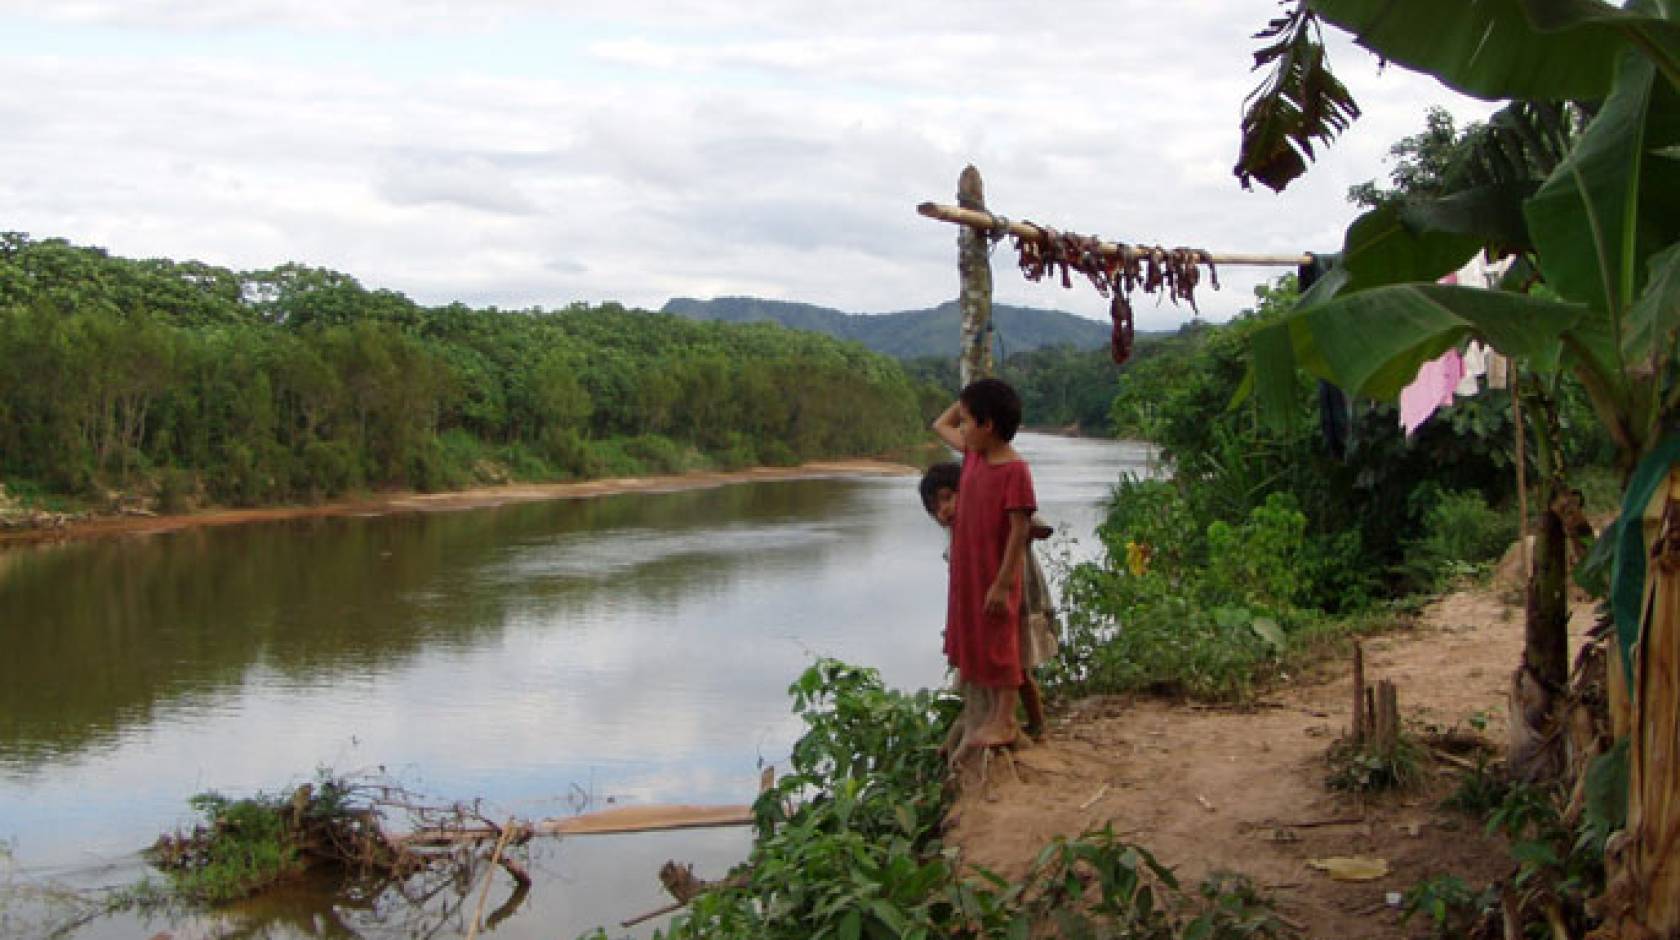 Tsimane children on a riverbank